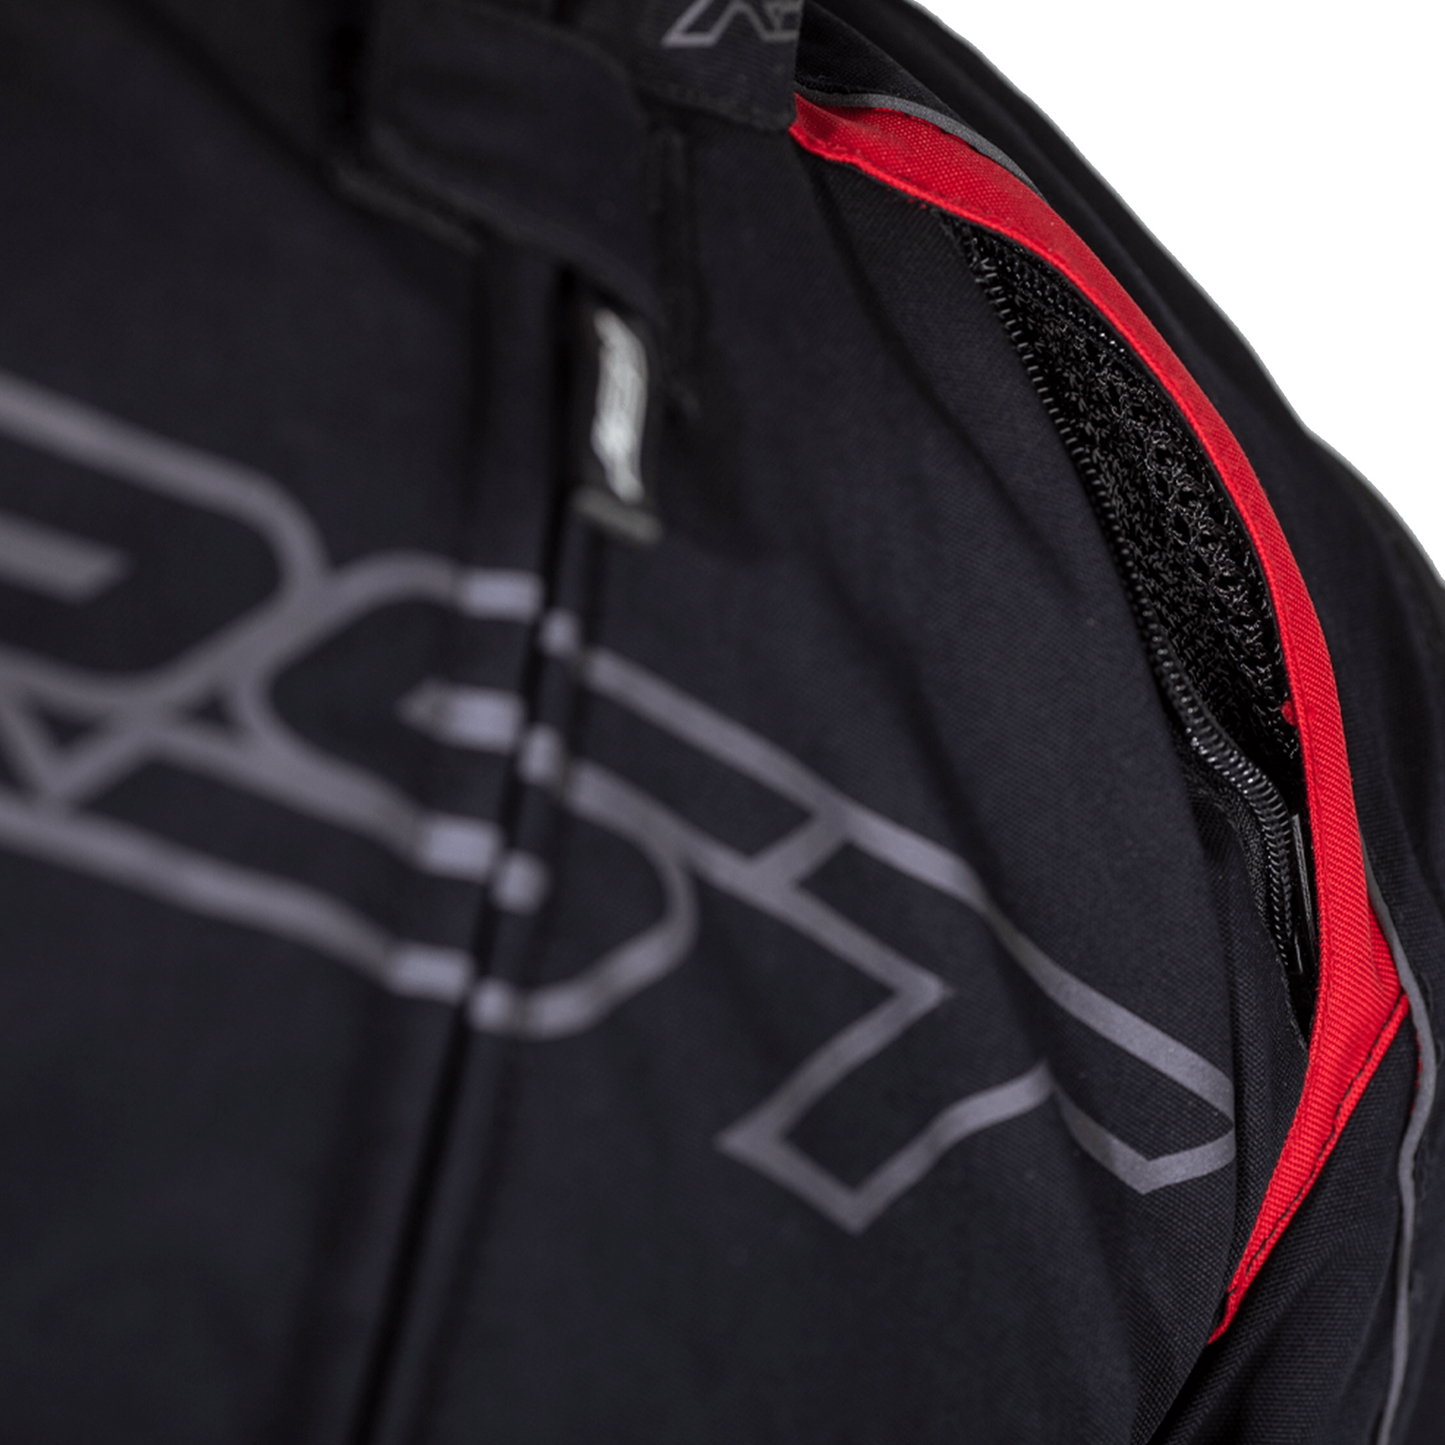 RST Sabre Textile Jacket - Red (2556)